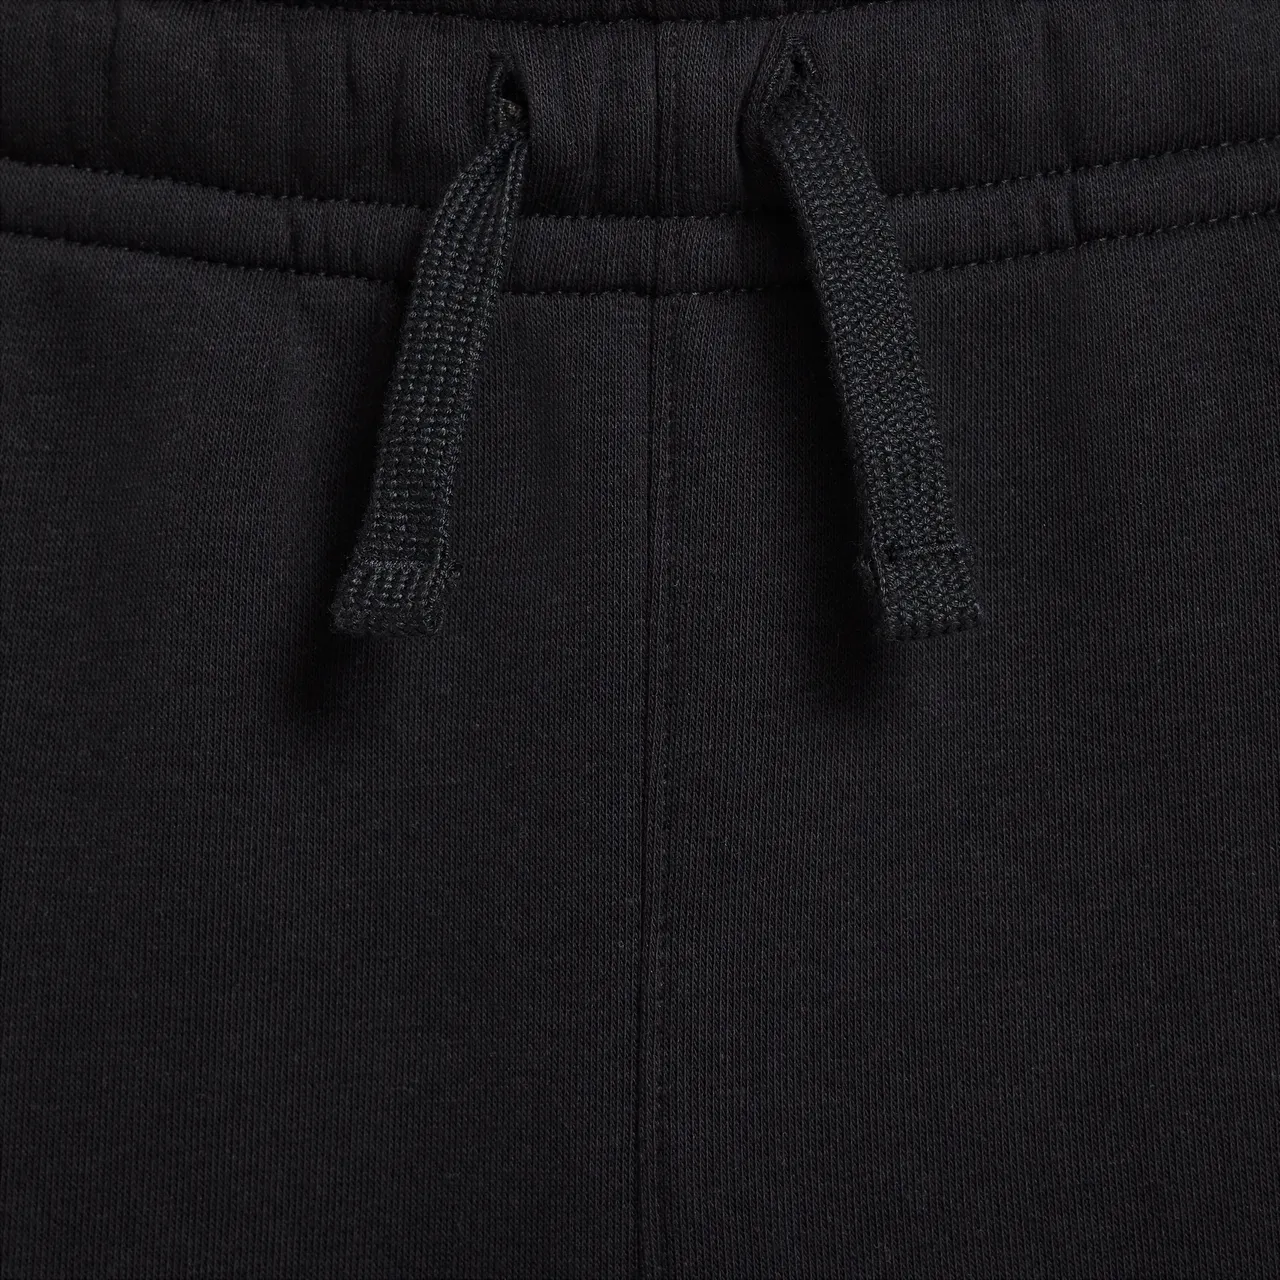 Nike Sportswear Older Kids' (Boys') Fleece Graphic Cargo Trousers - Black - Cotton